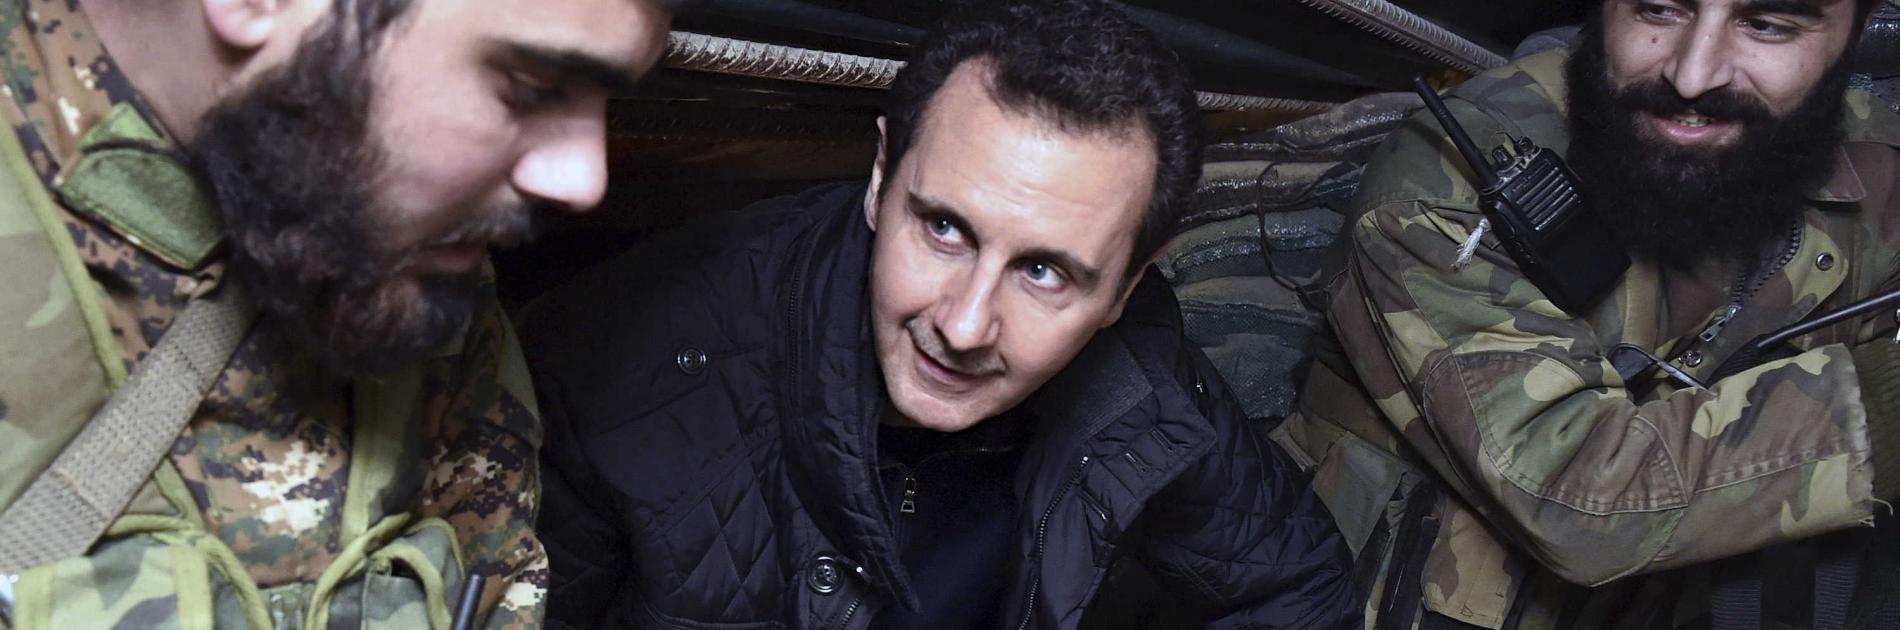 4 ضربات مؤلمة للأسد وعمه رفعت يواجه فضيحة